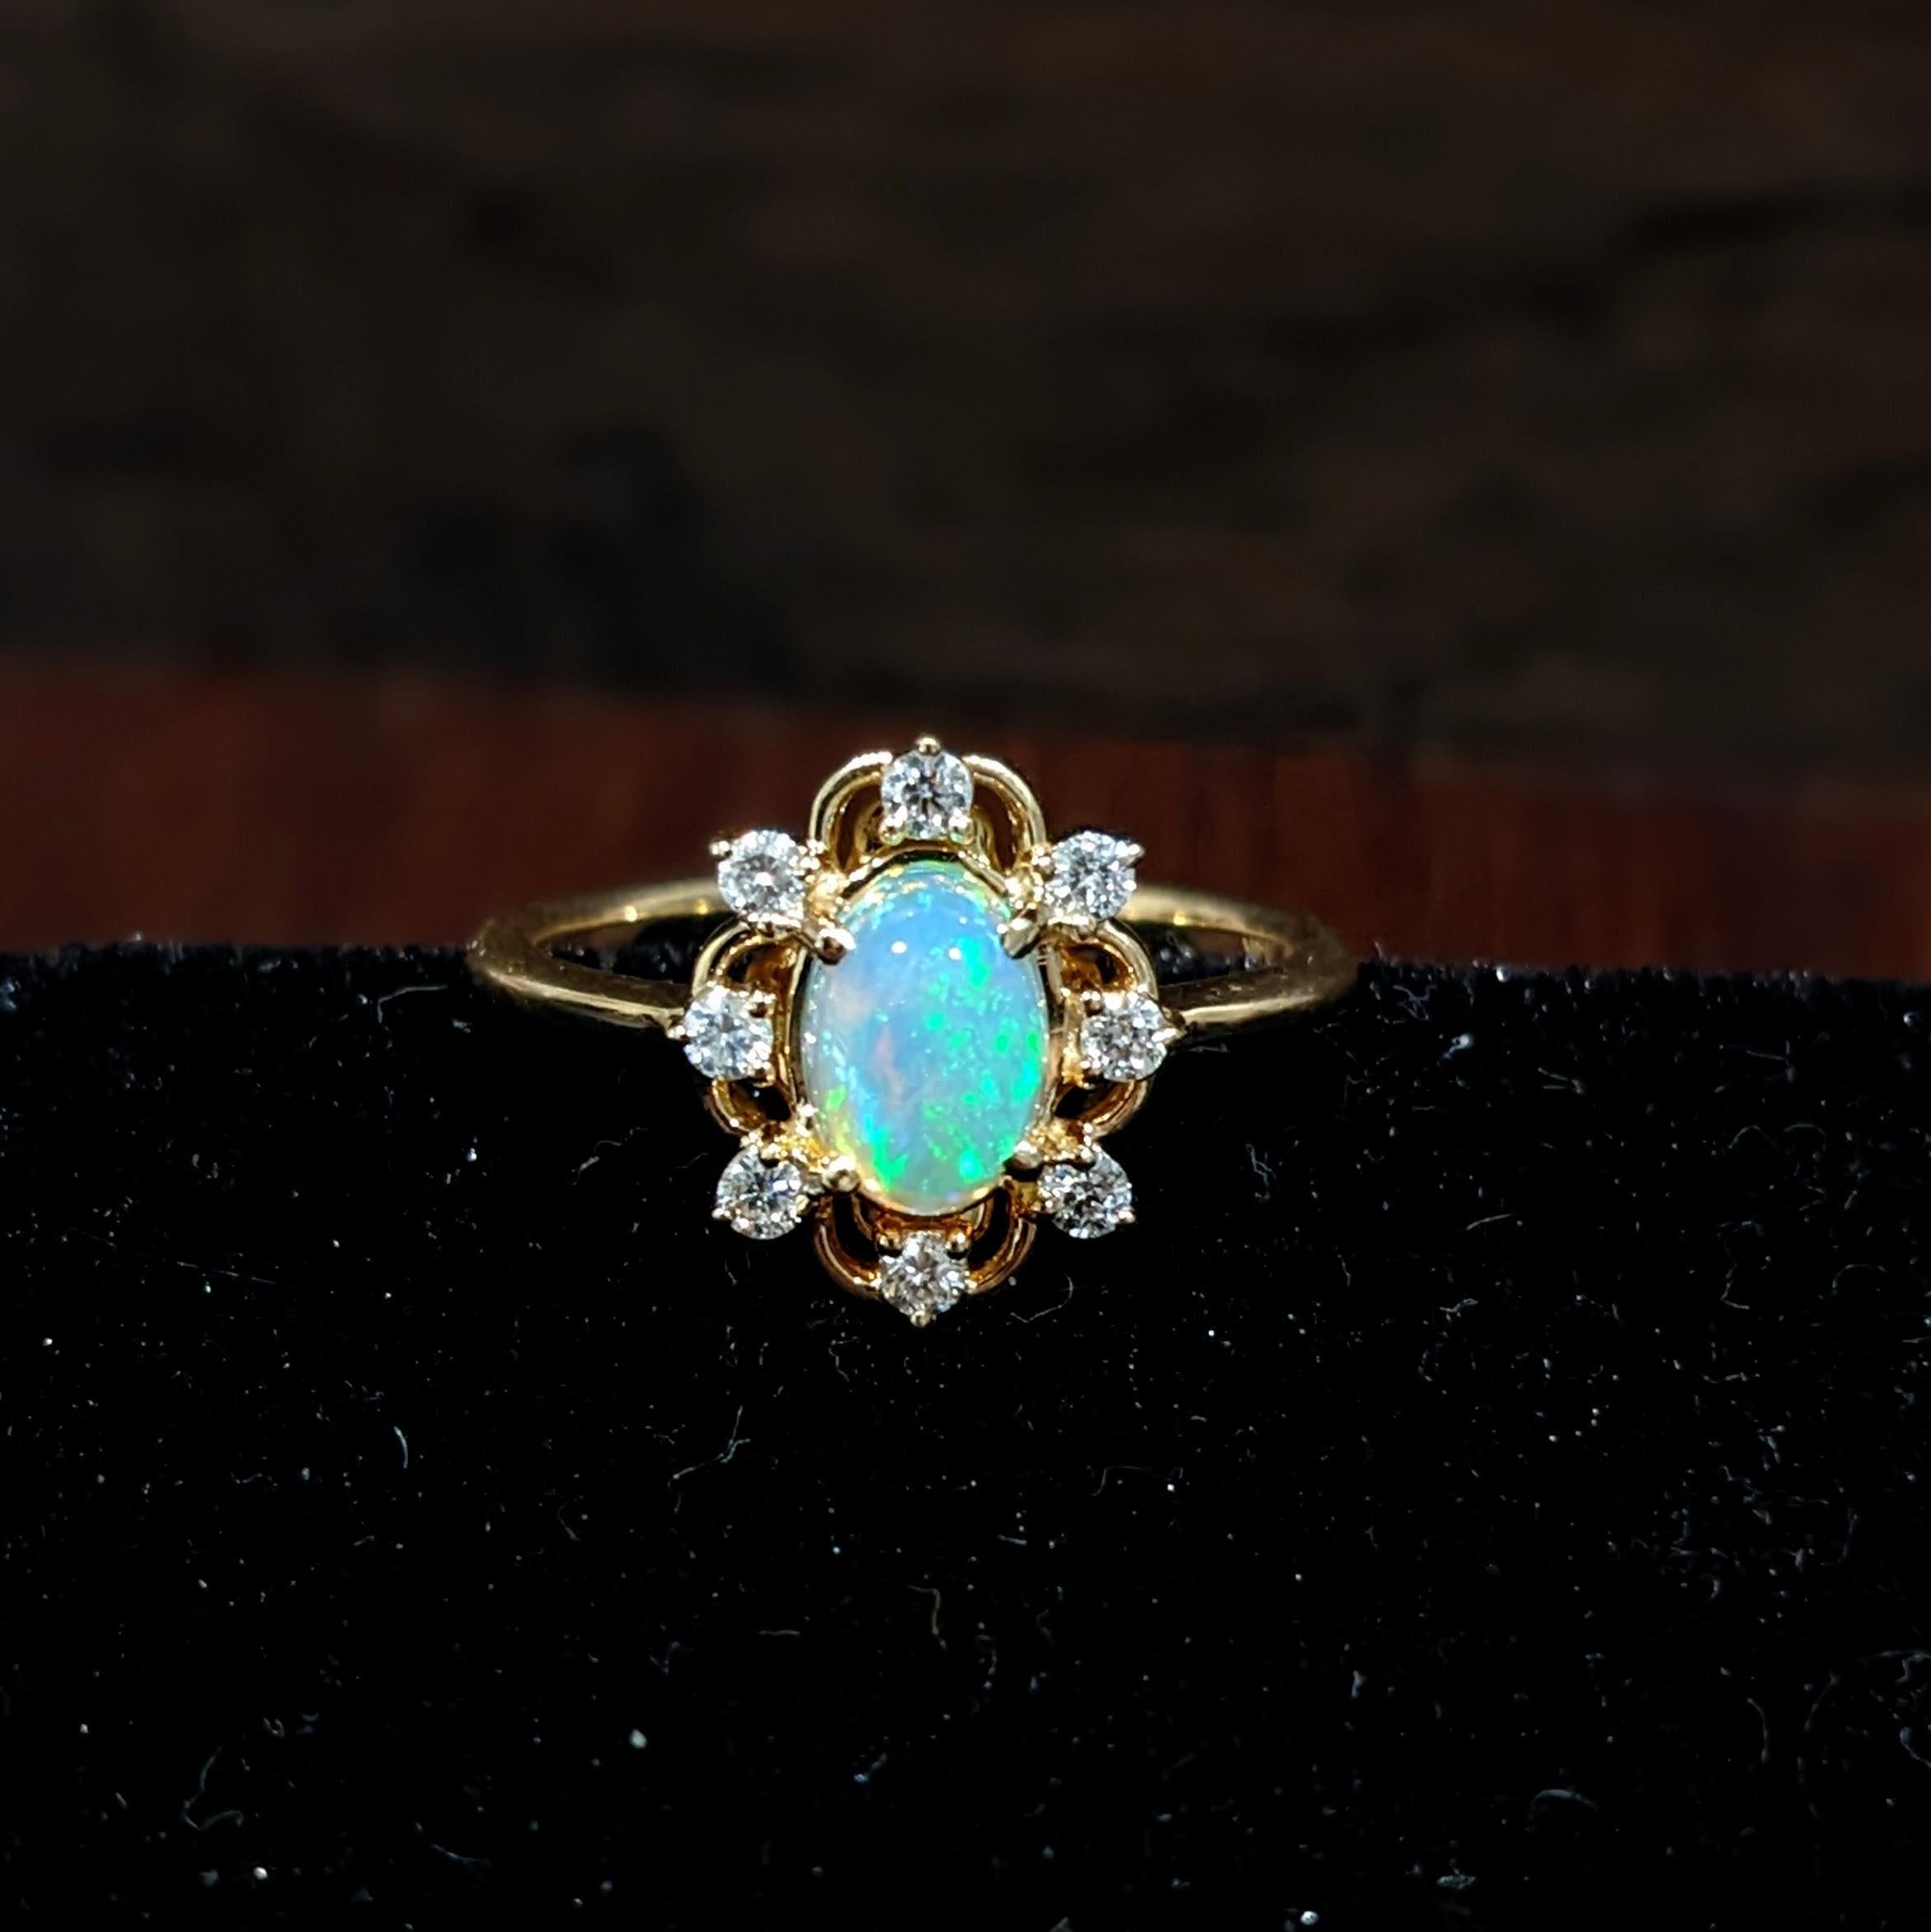 Cette belle opale présente toutes les couleurs de l'arc-en-ciel et est rehaussée de diamants naturels extraits de la terre. Cette bague ovale est parfaite pour la mariée moderne ou la personne qui vous est chère ! Cette bague en opale constitue